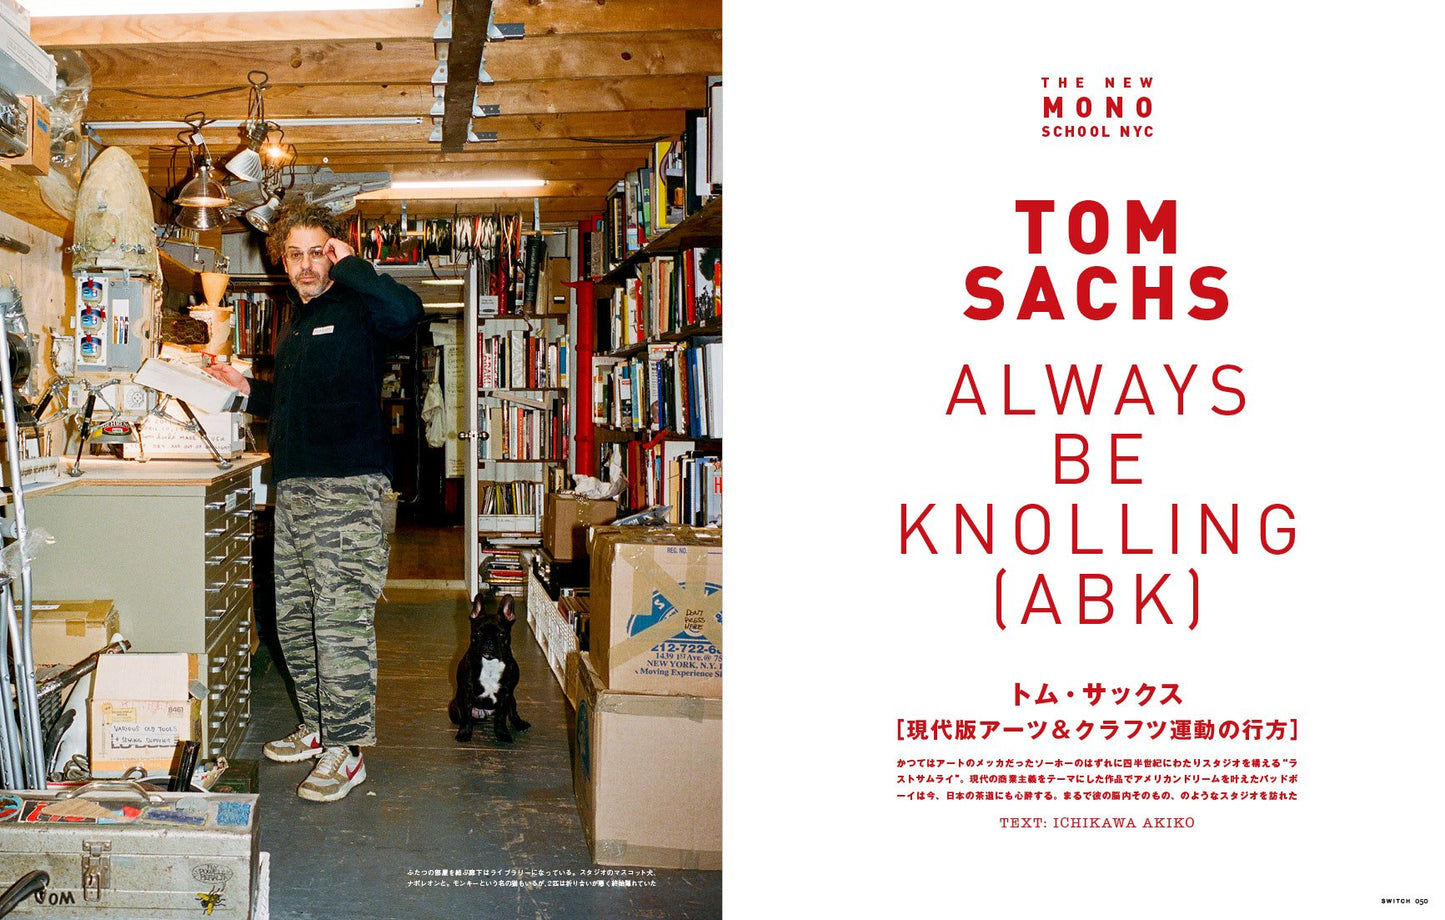 日本雜誌 SWITCH Vol.35 No.5《特集:坂本龍一 もの探しニューヨーク》(Special Feature: Ryuichi Sakamoto Looking for Things in New York) ＜出版日期：2017年4月＞ 144頁 22x28x1cm